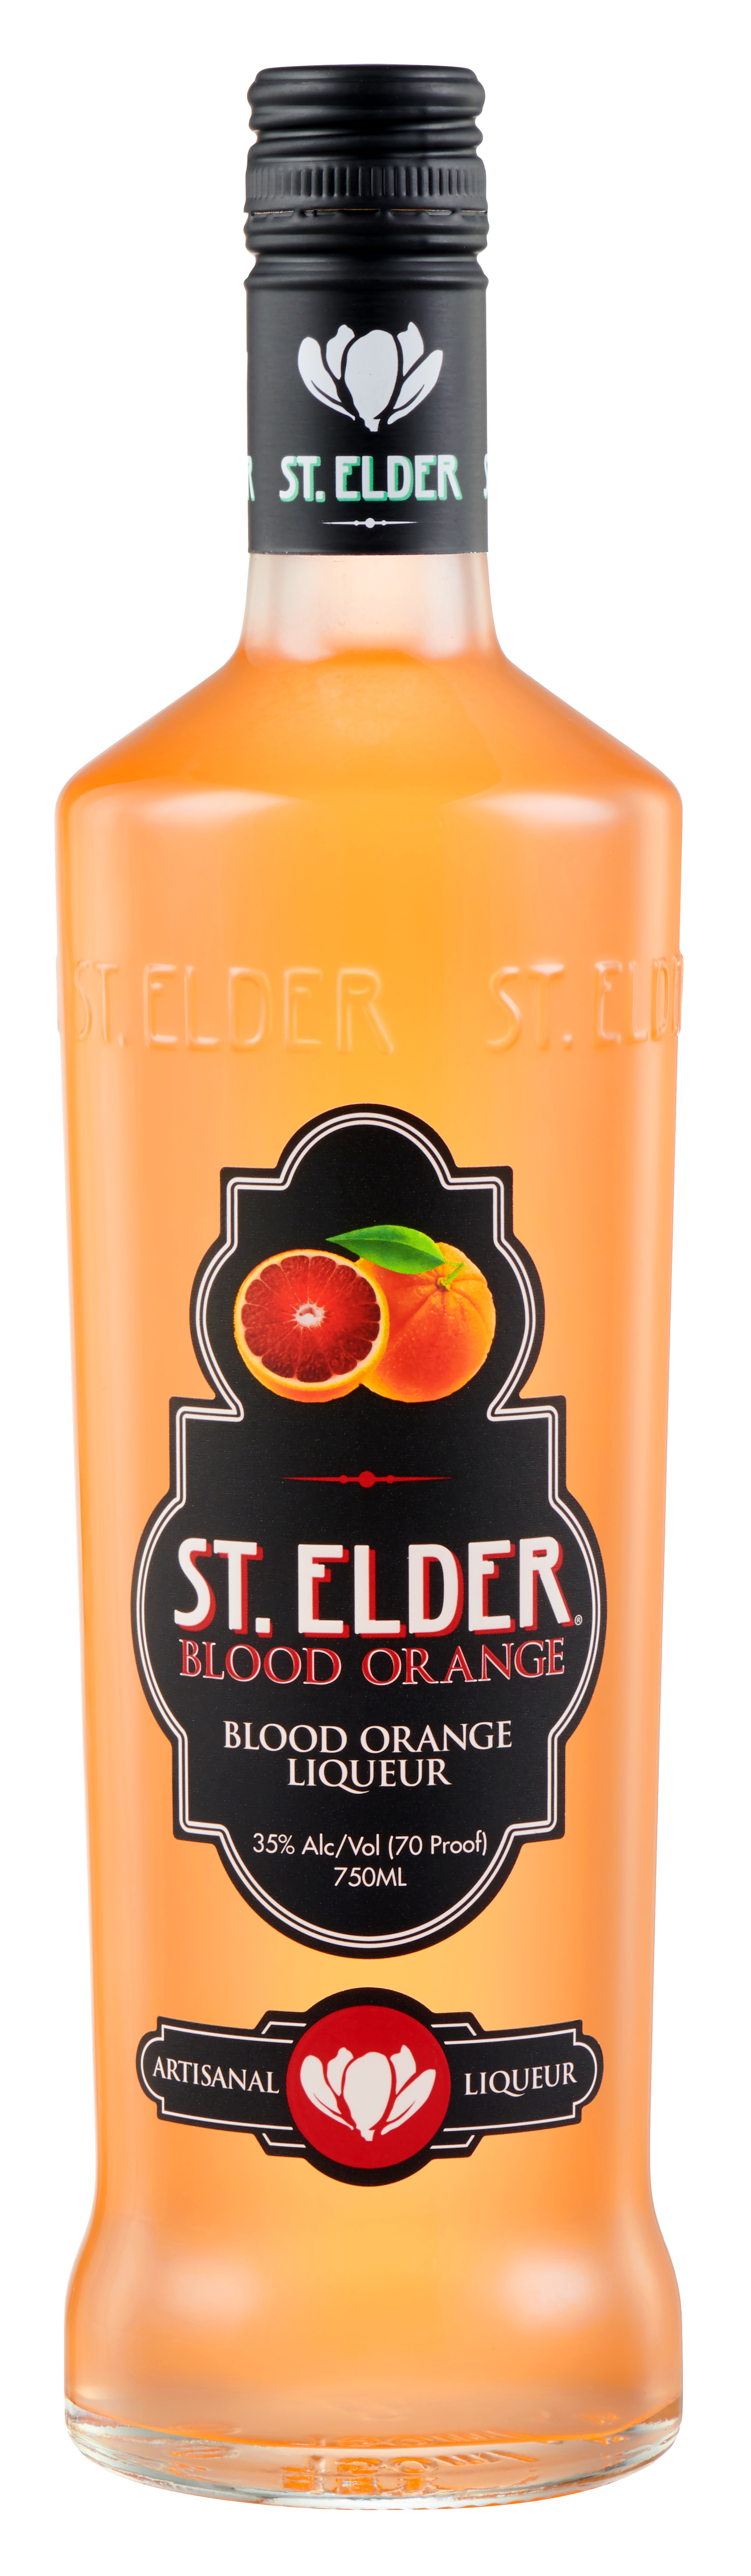 St. Elder Artisinal Liqueur Blood Orange Bottle Shot